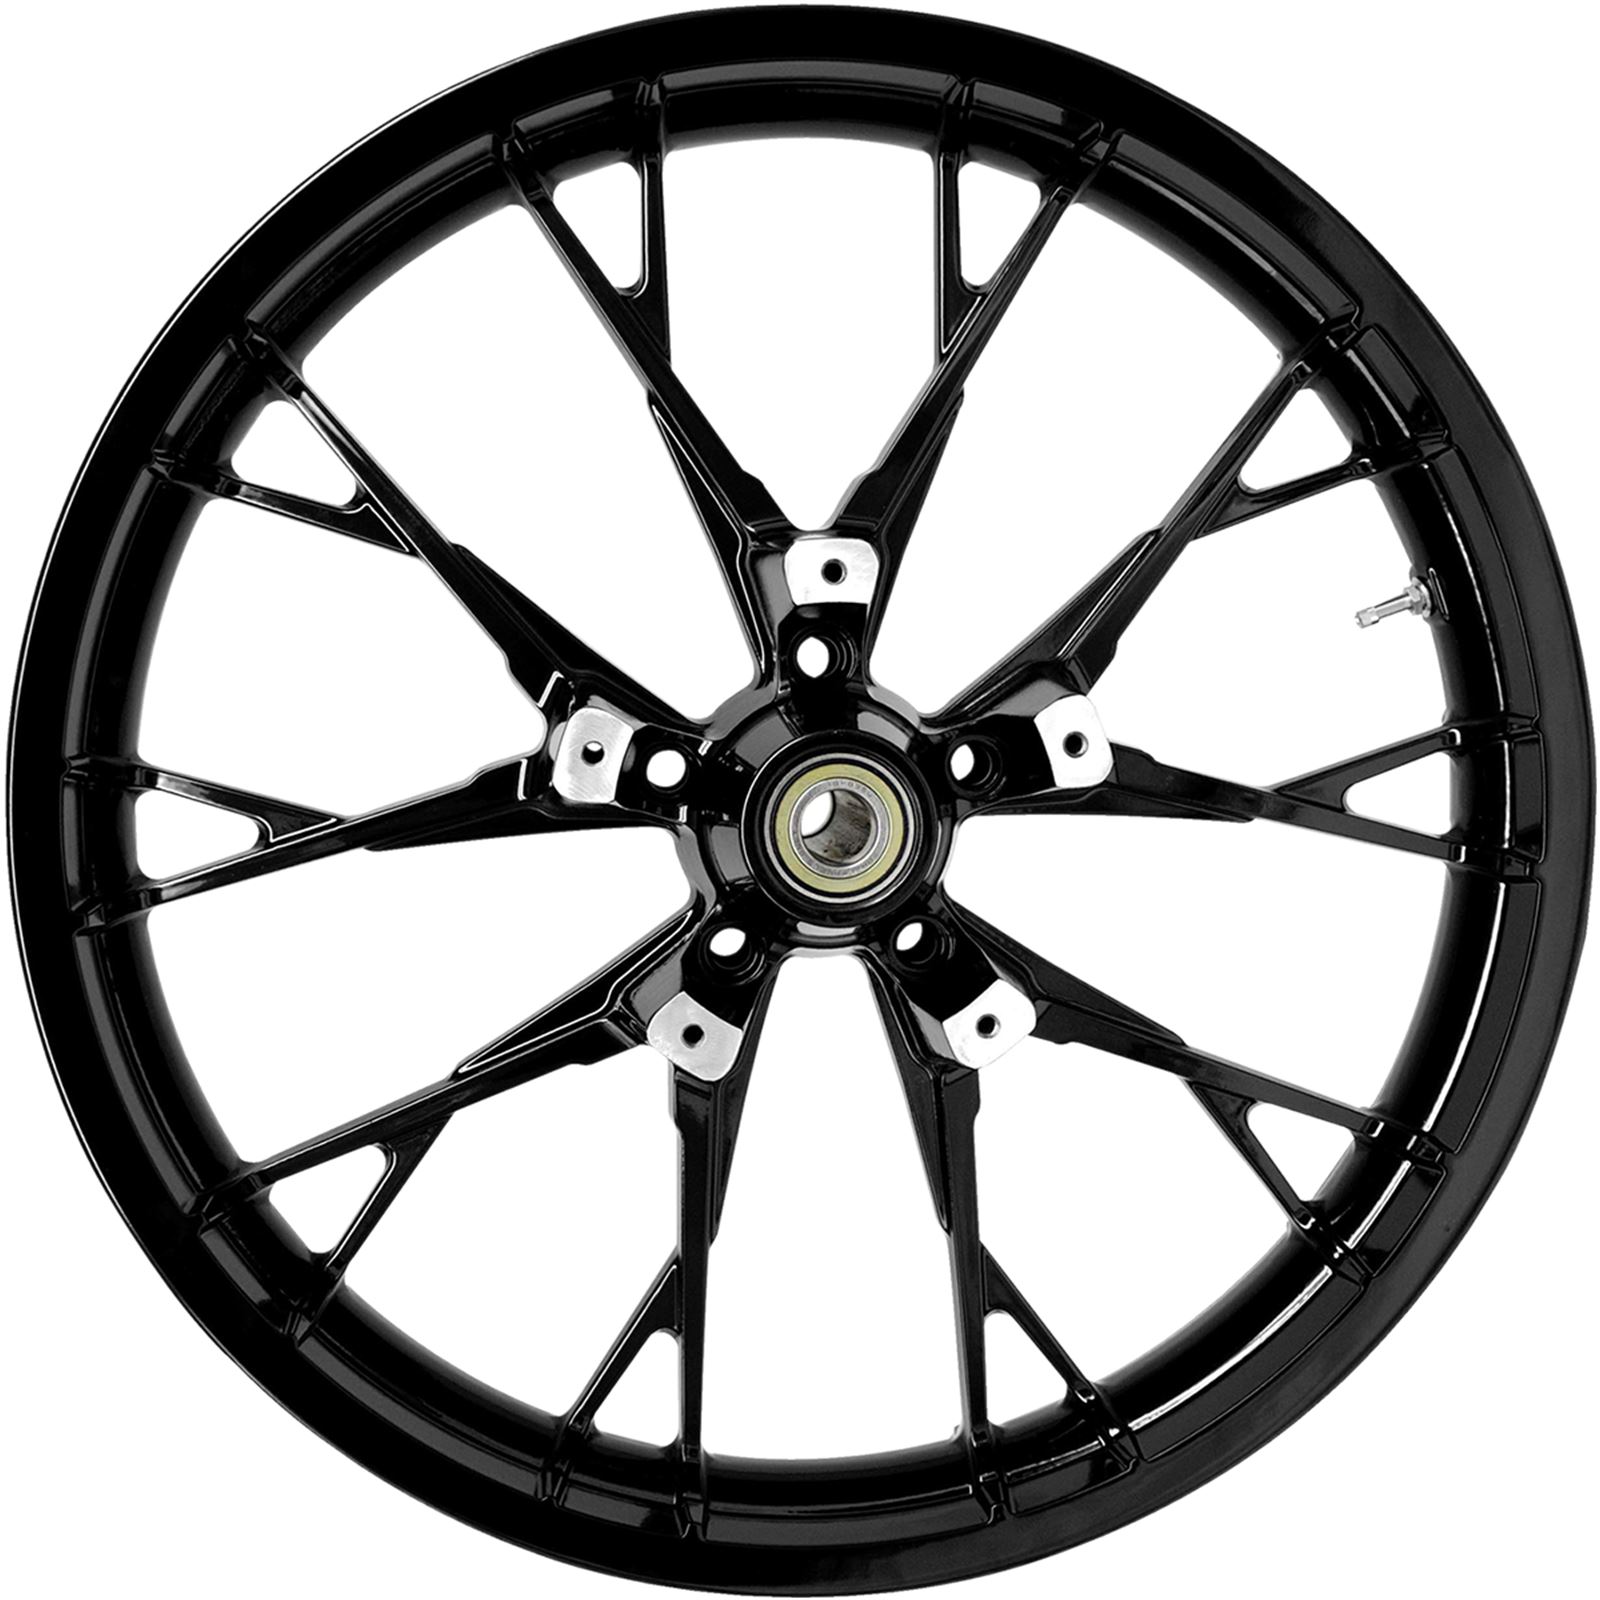 Coastal Moto Front Wheel - Marlin - Dual Disc/No ABS - Solid Black - 21"x3.50"